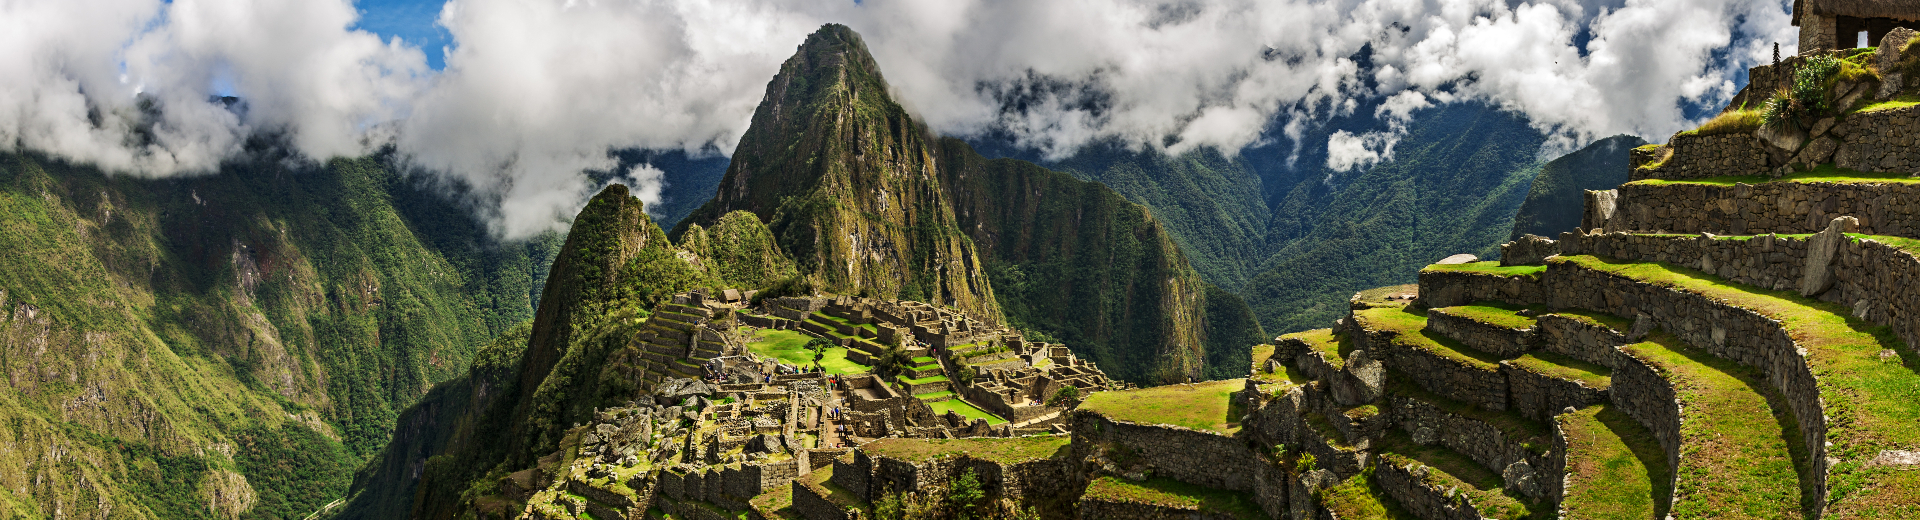 Reizen naar Peru